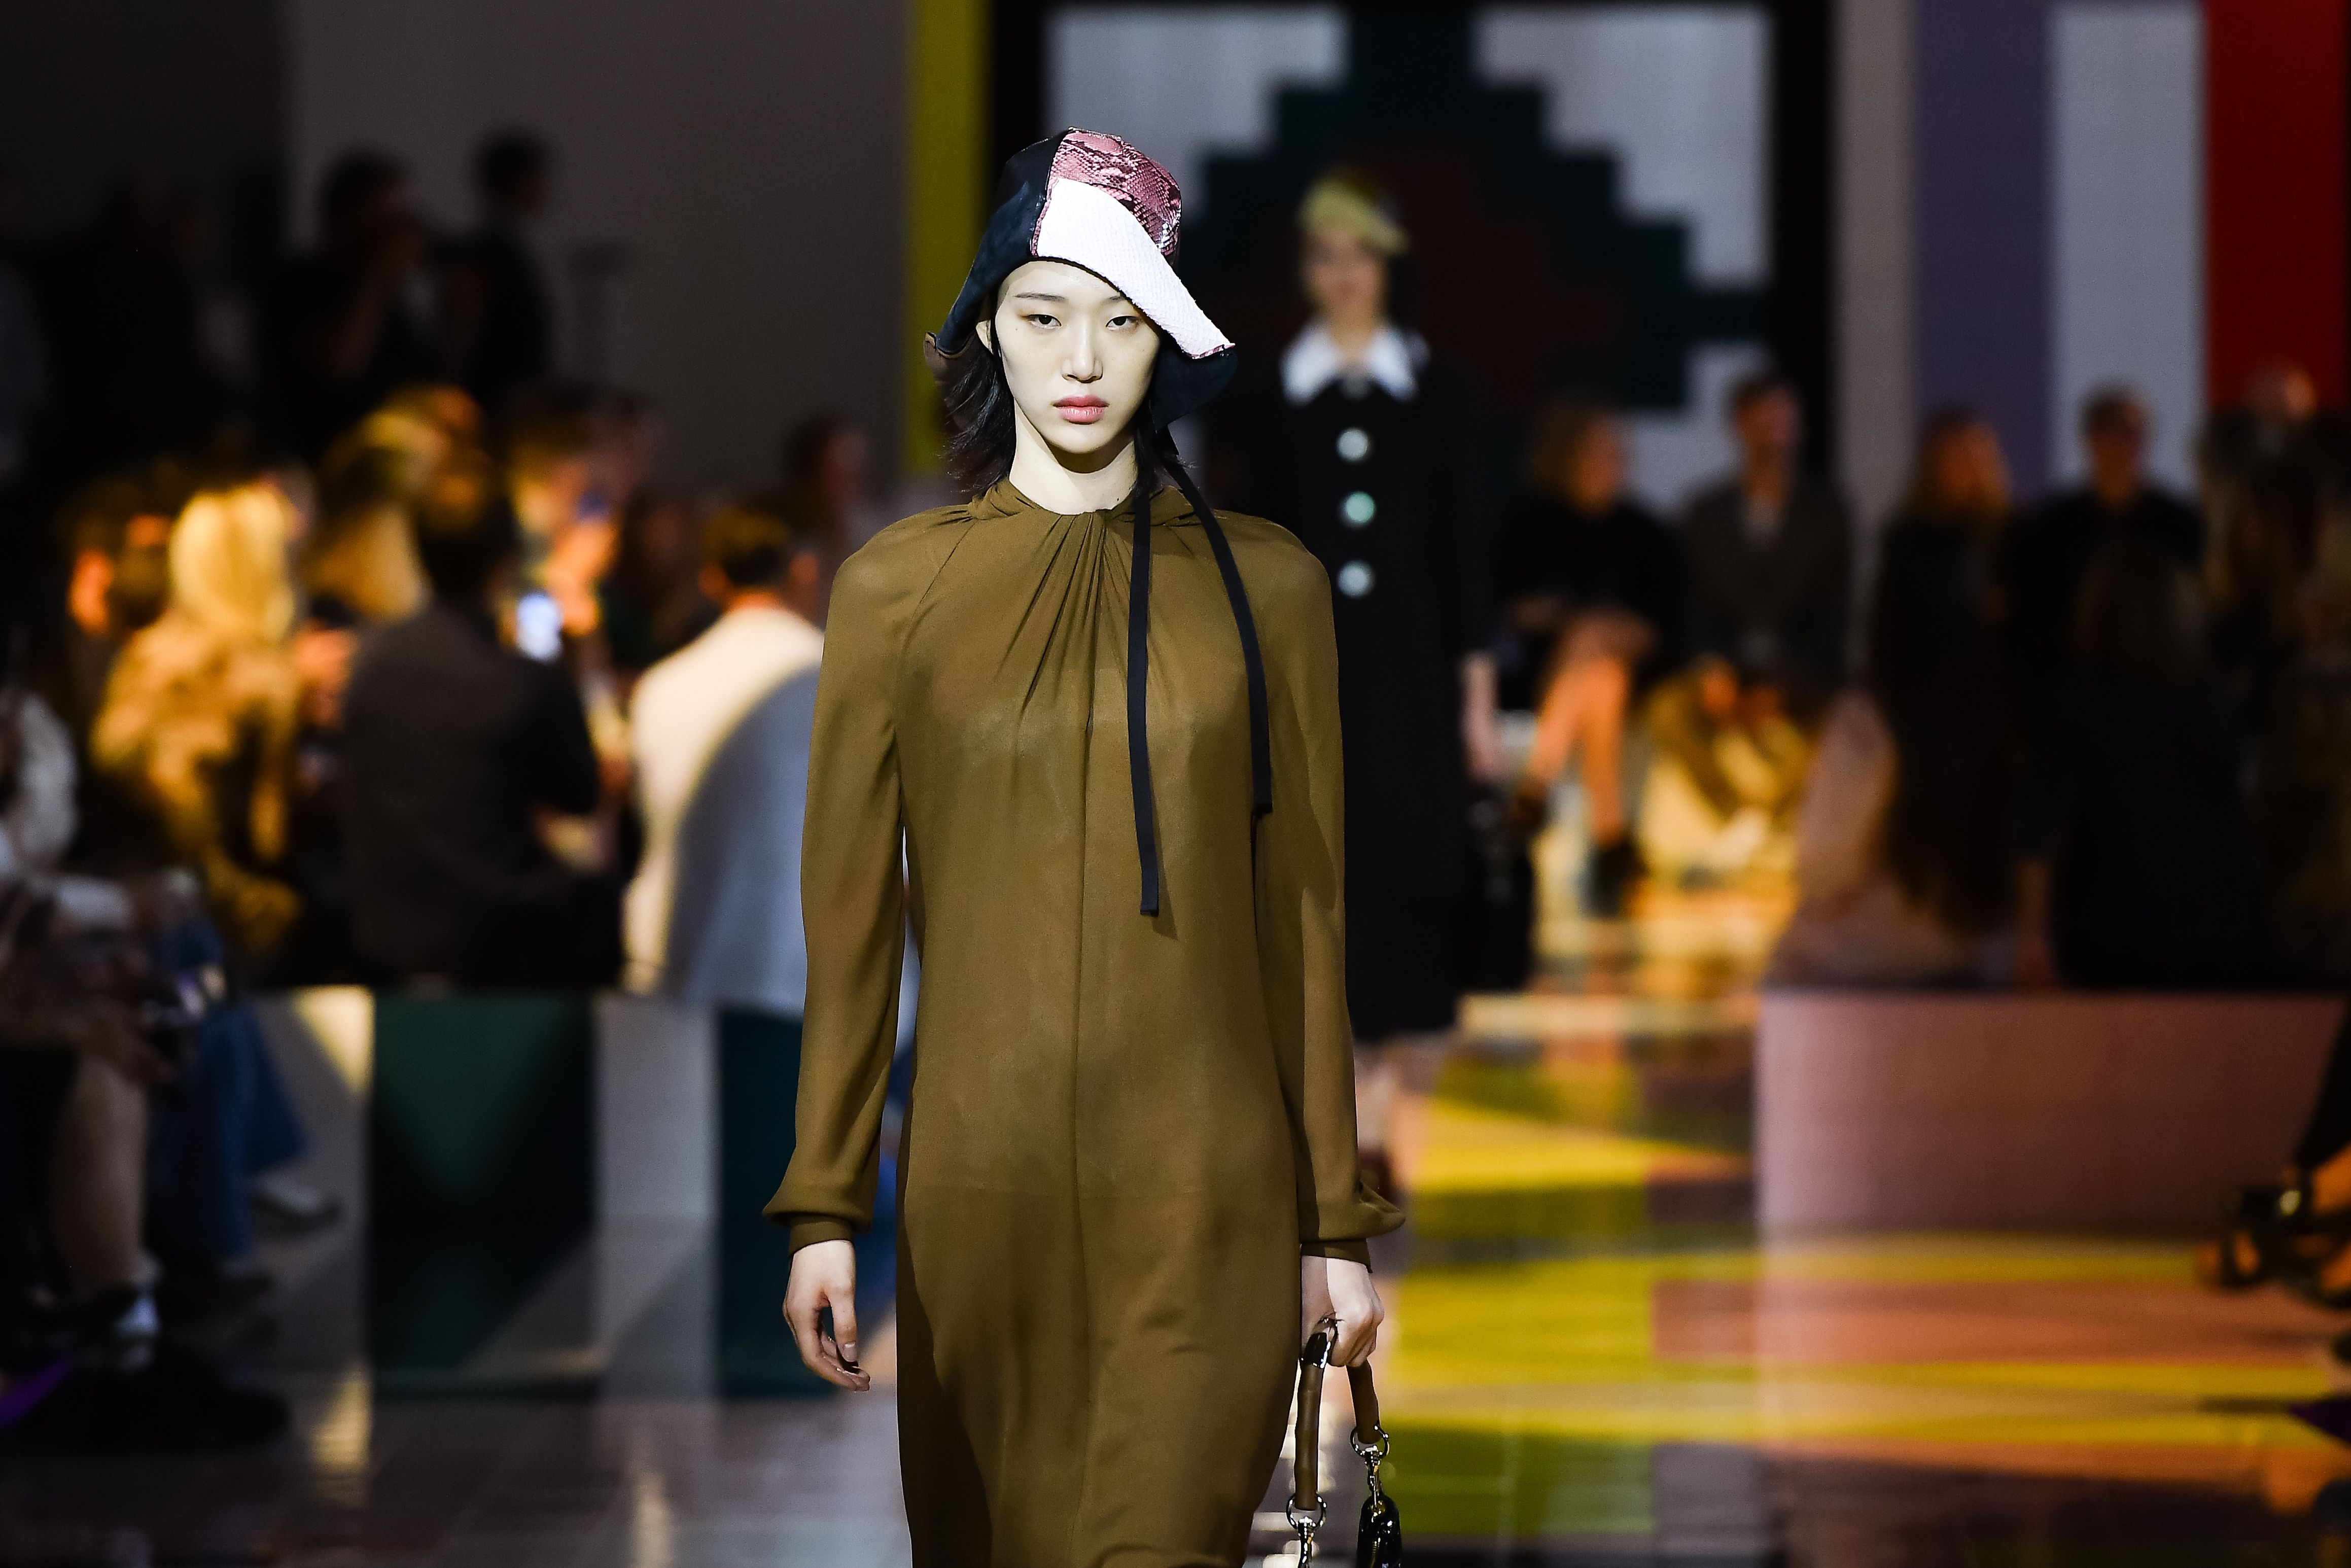 月18日,在意大利米兰时装周上,模特展示普拉达品牌的2020春夏新款服装